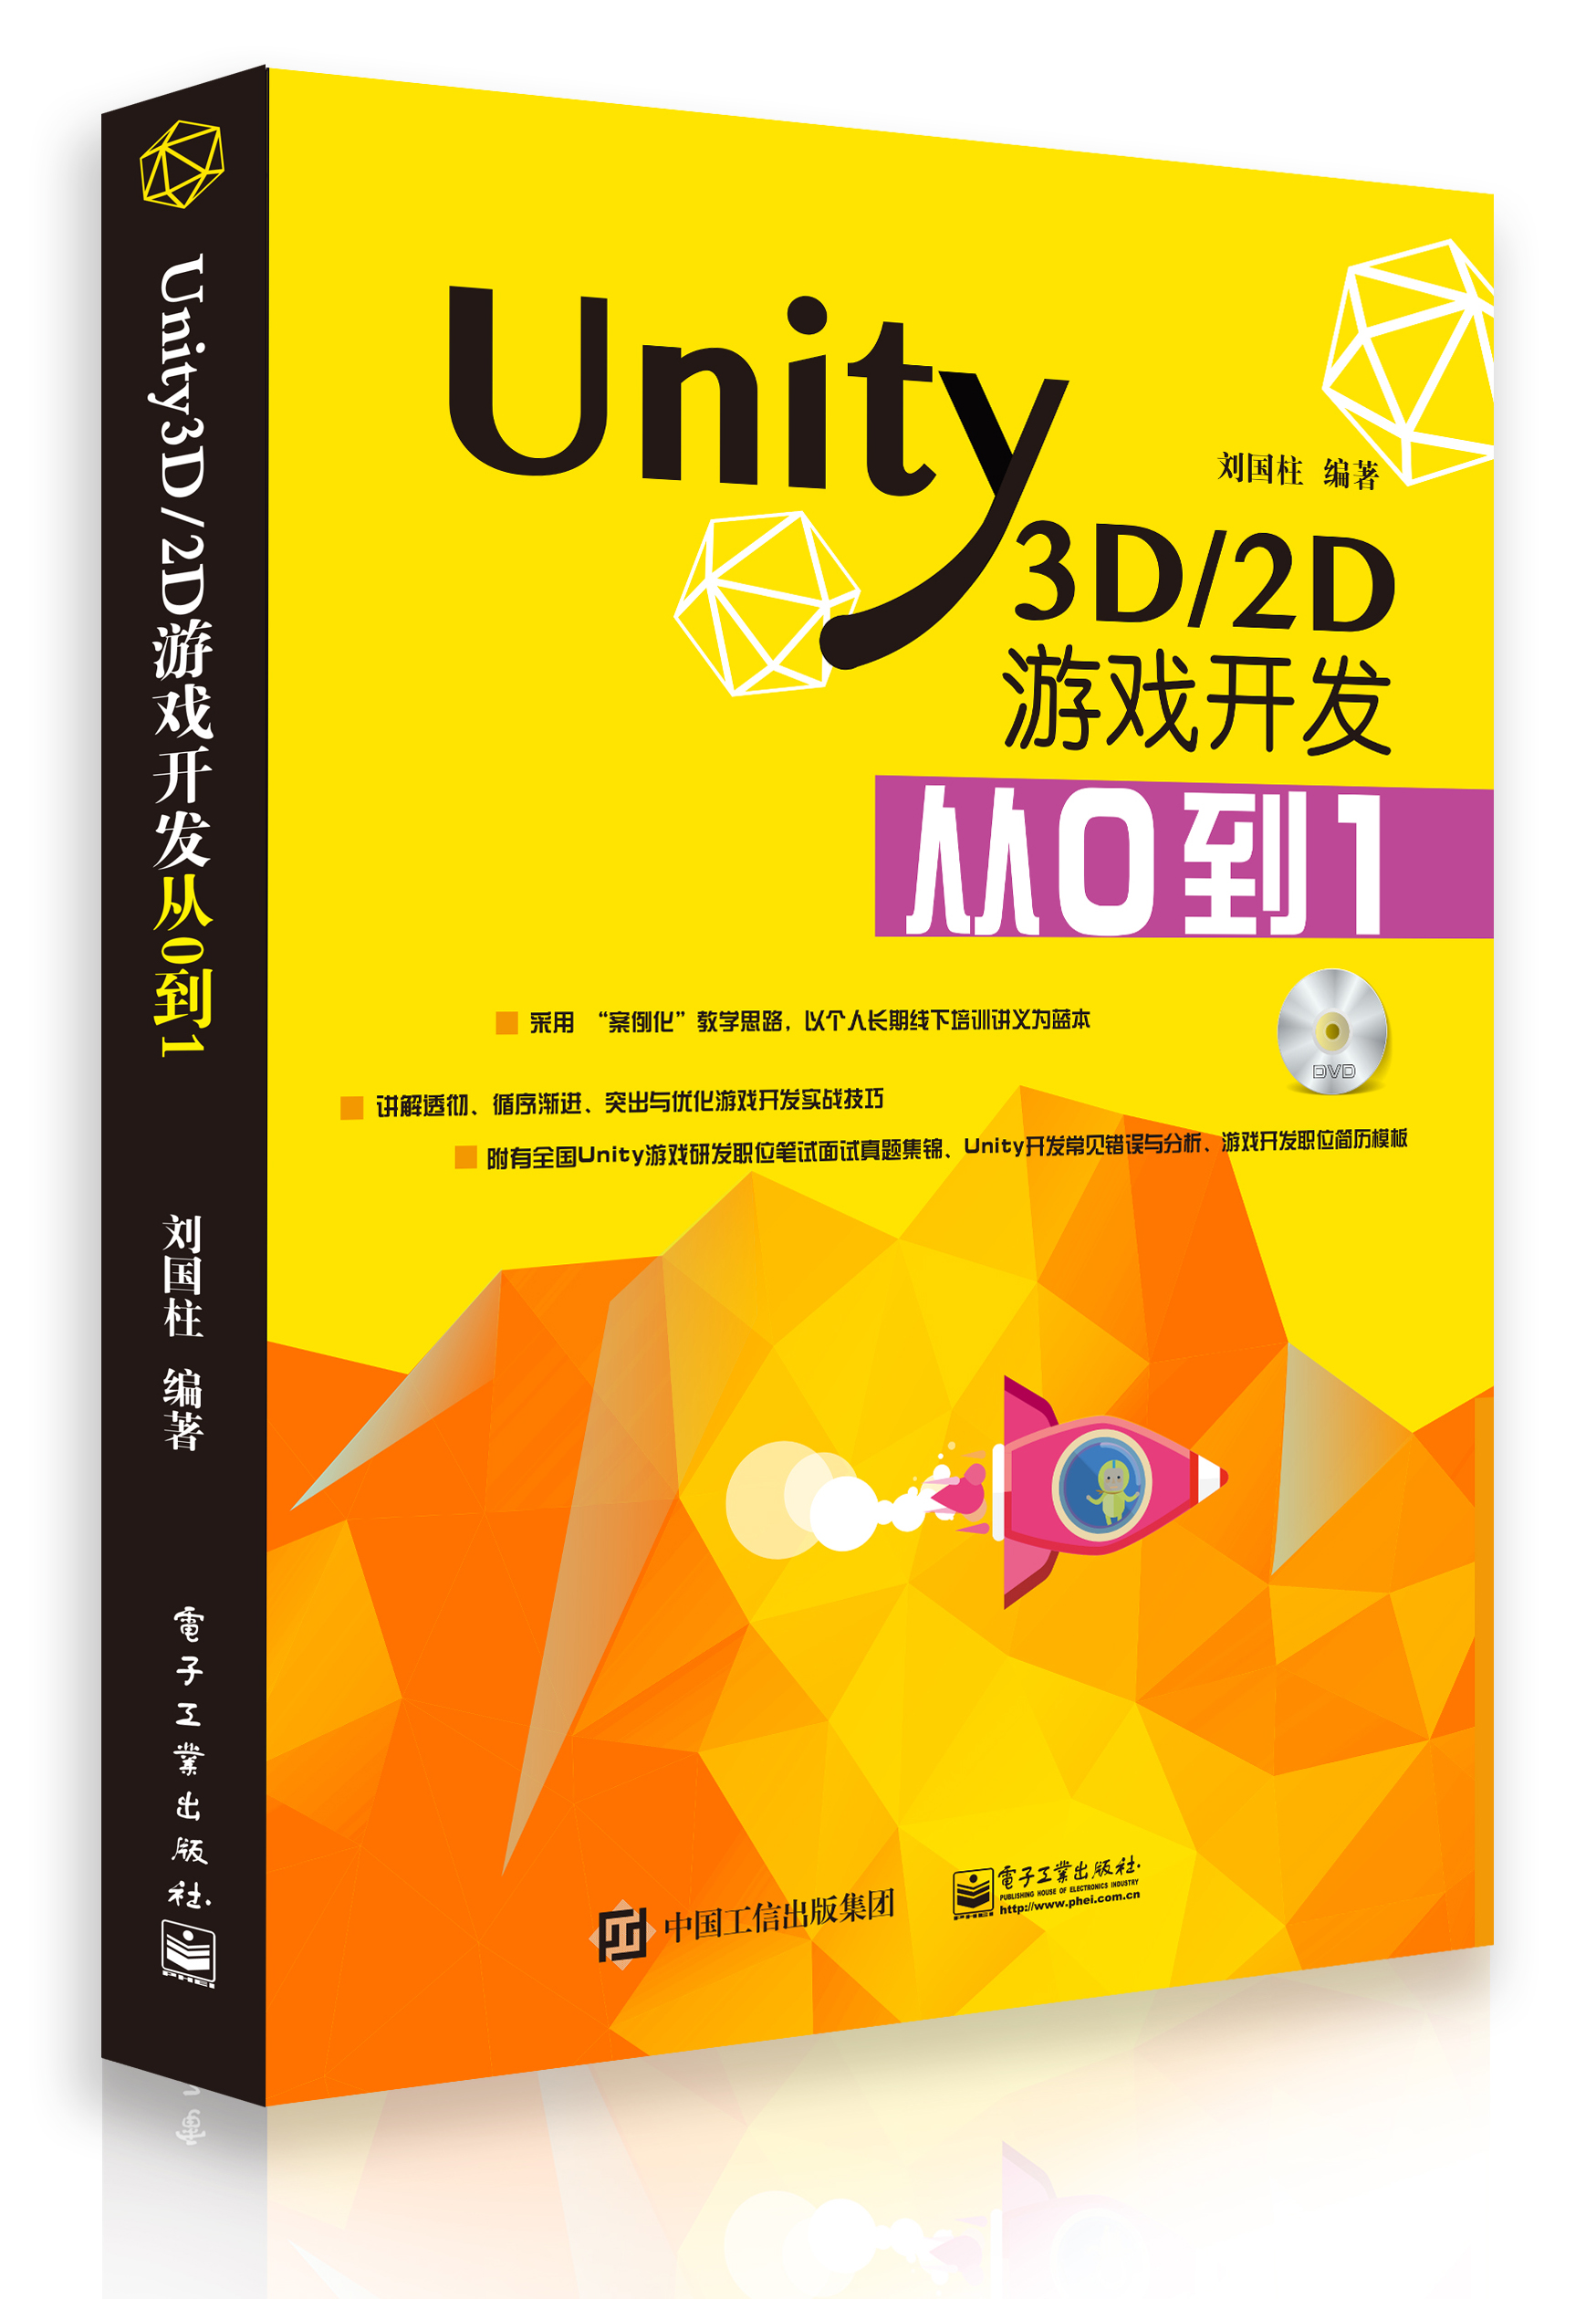 关于《Unity3D/2D游戏开发从0到1》书籍再版说明